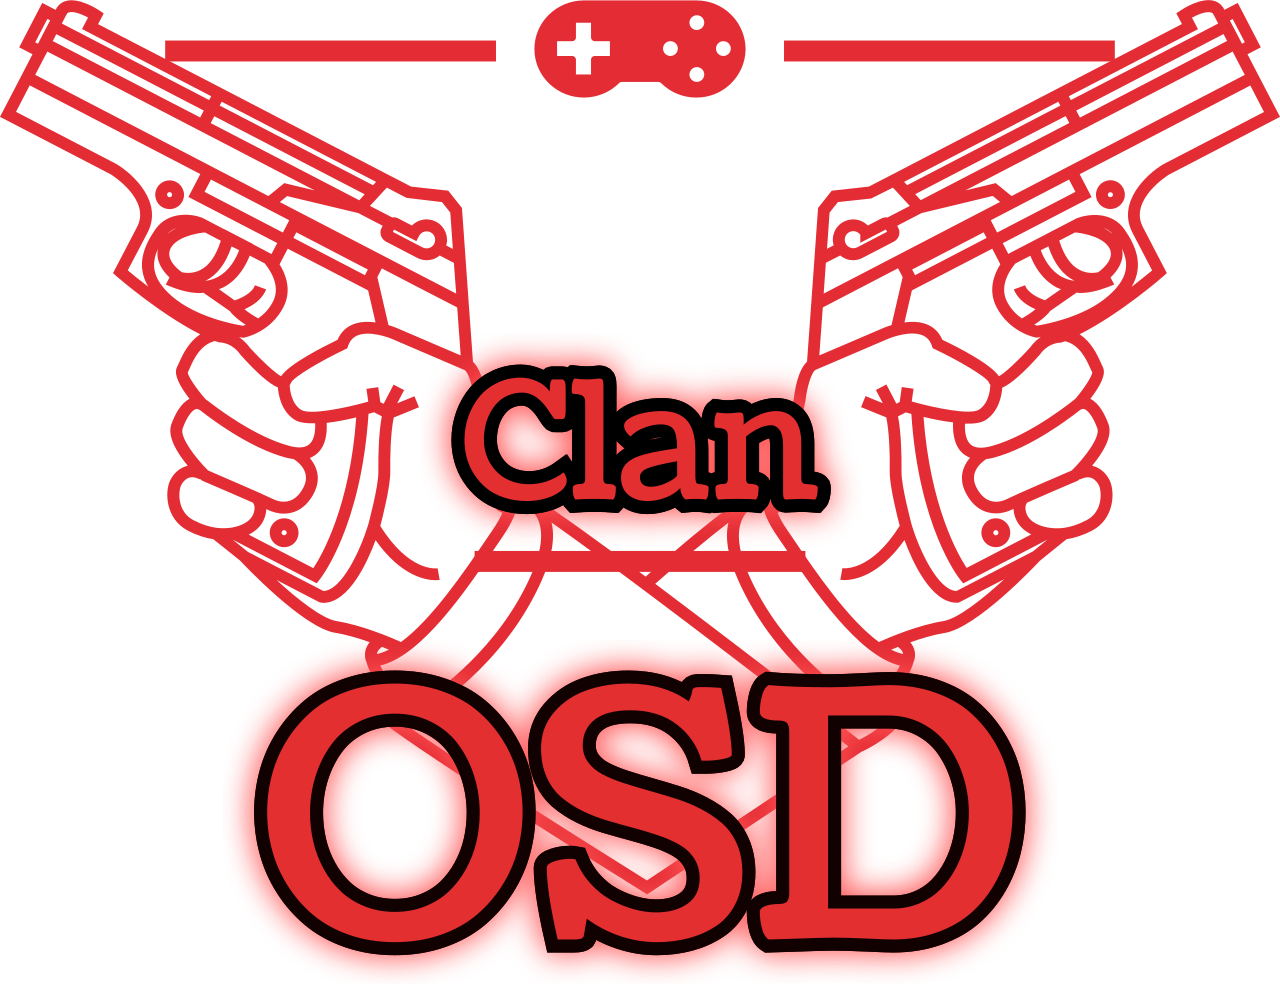 OSD's web page